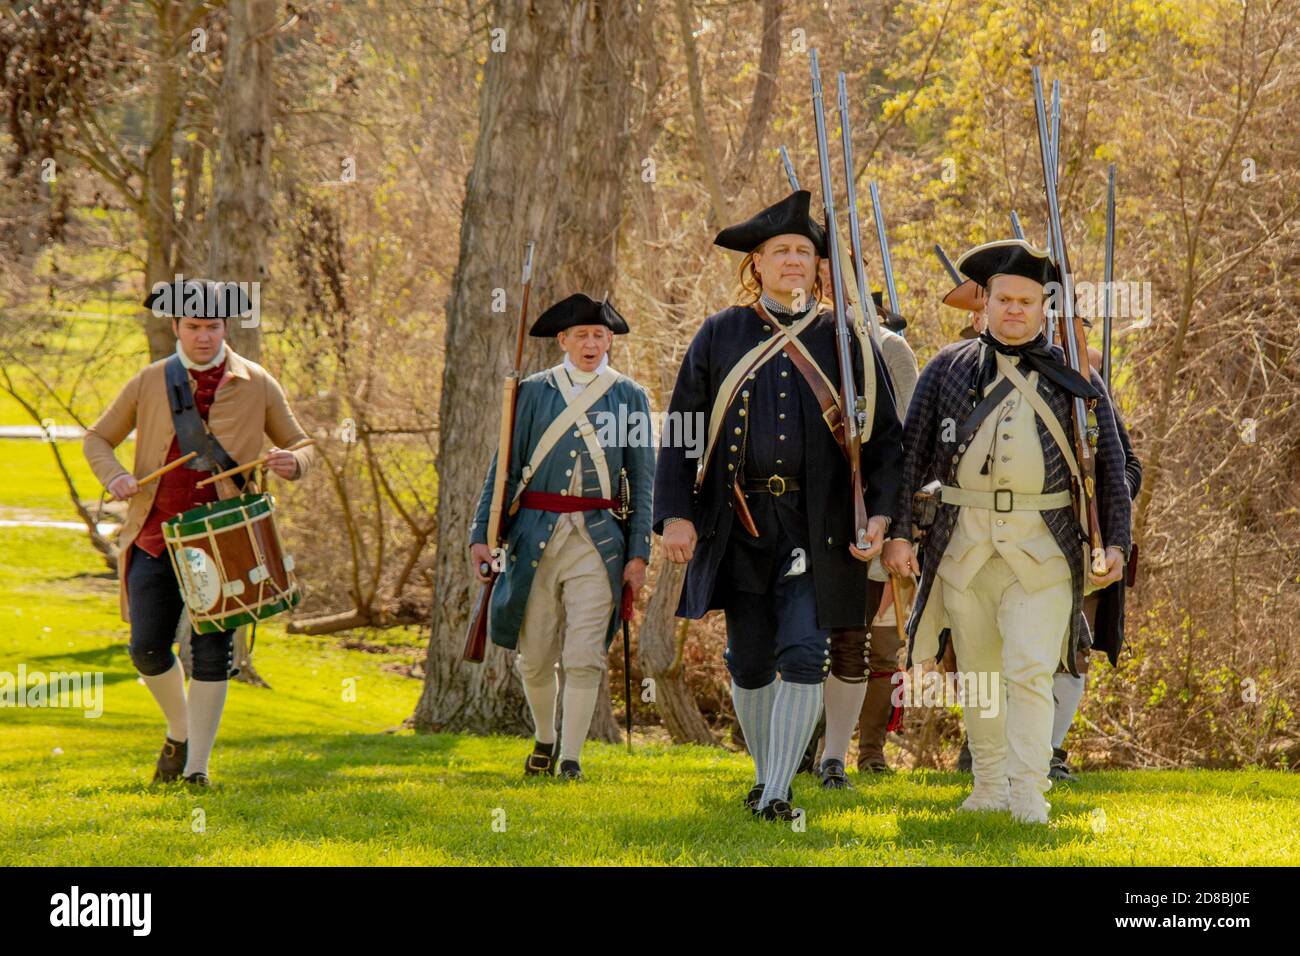 Un baterista acompaña a los soldados rebeldes representados por los actores march to Batalla en una recreación histórica de una Guerra Revolucionaria Americana Batalla en una caza Foto de stock